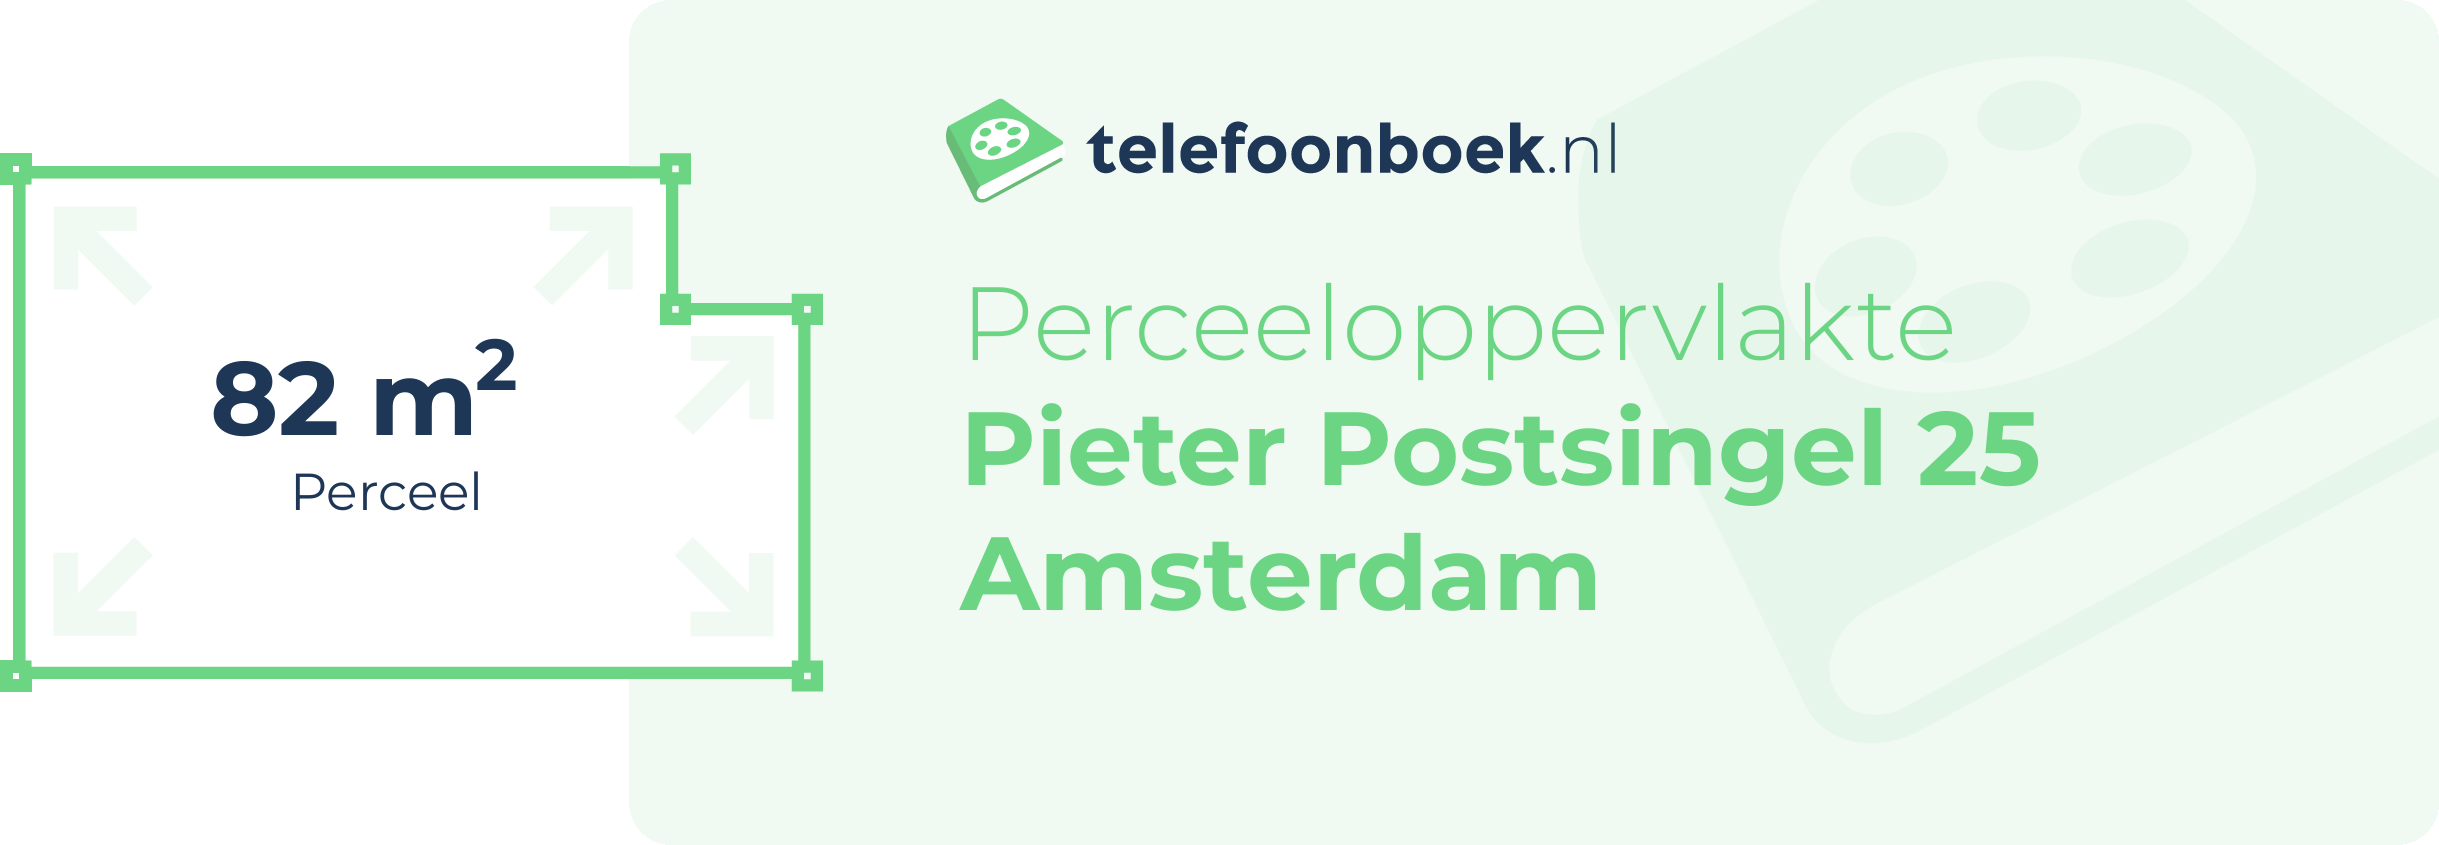 Perceeloppervlakte Pieter Postsingel 25 Amsterdam